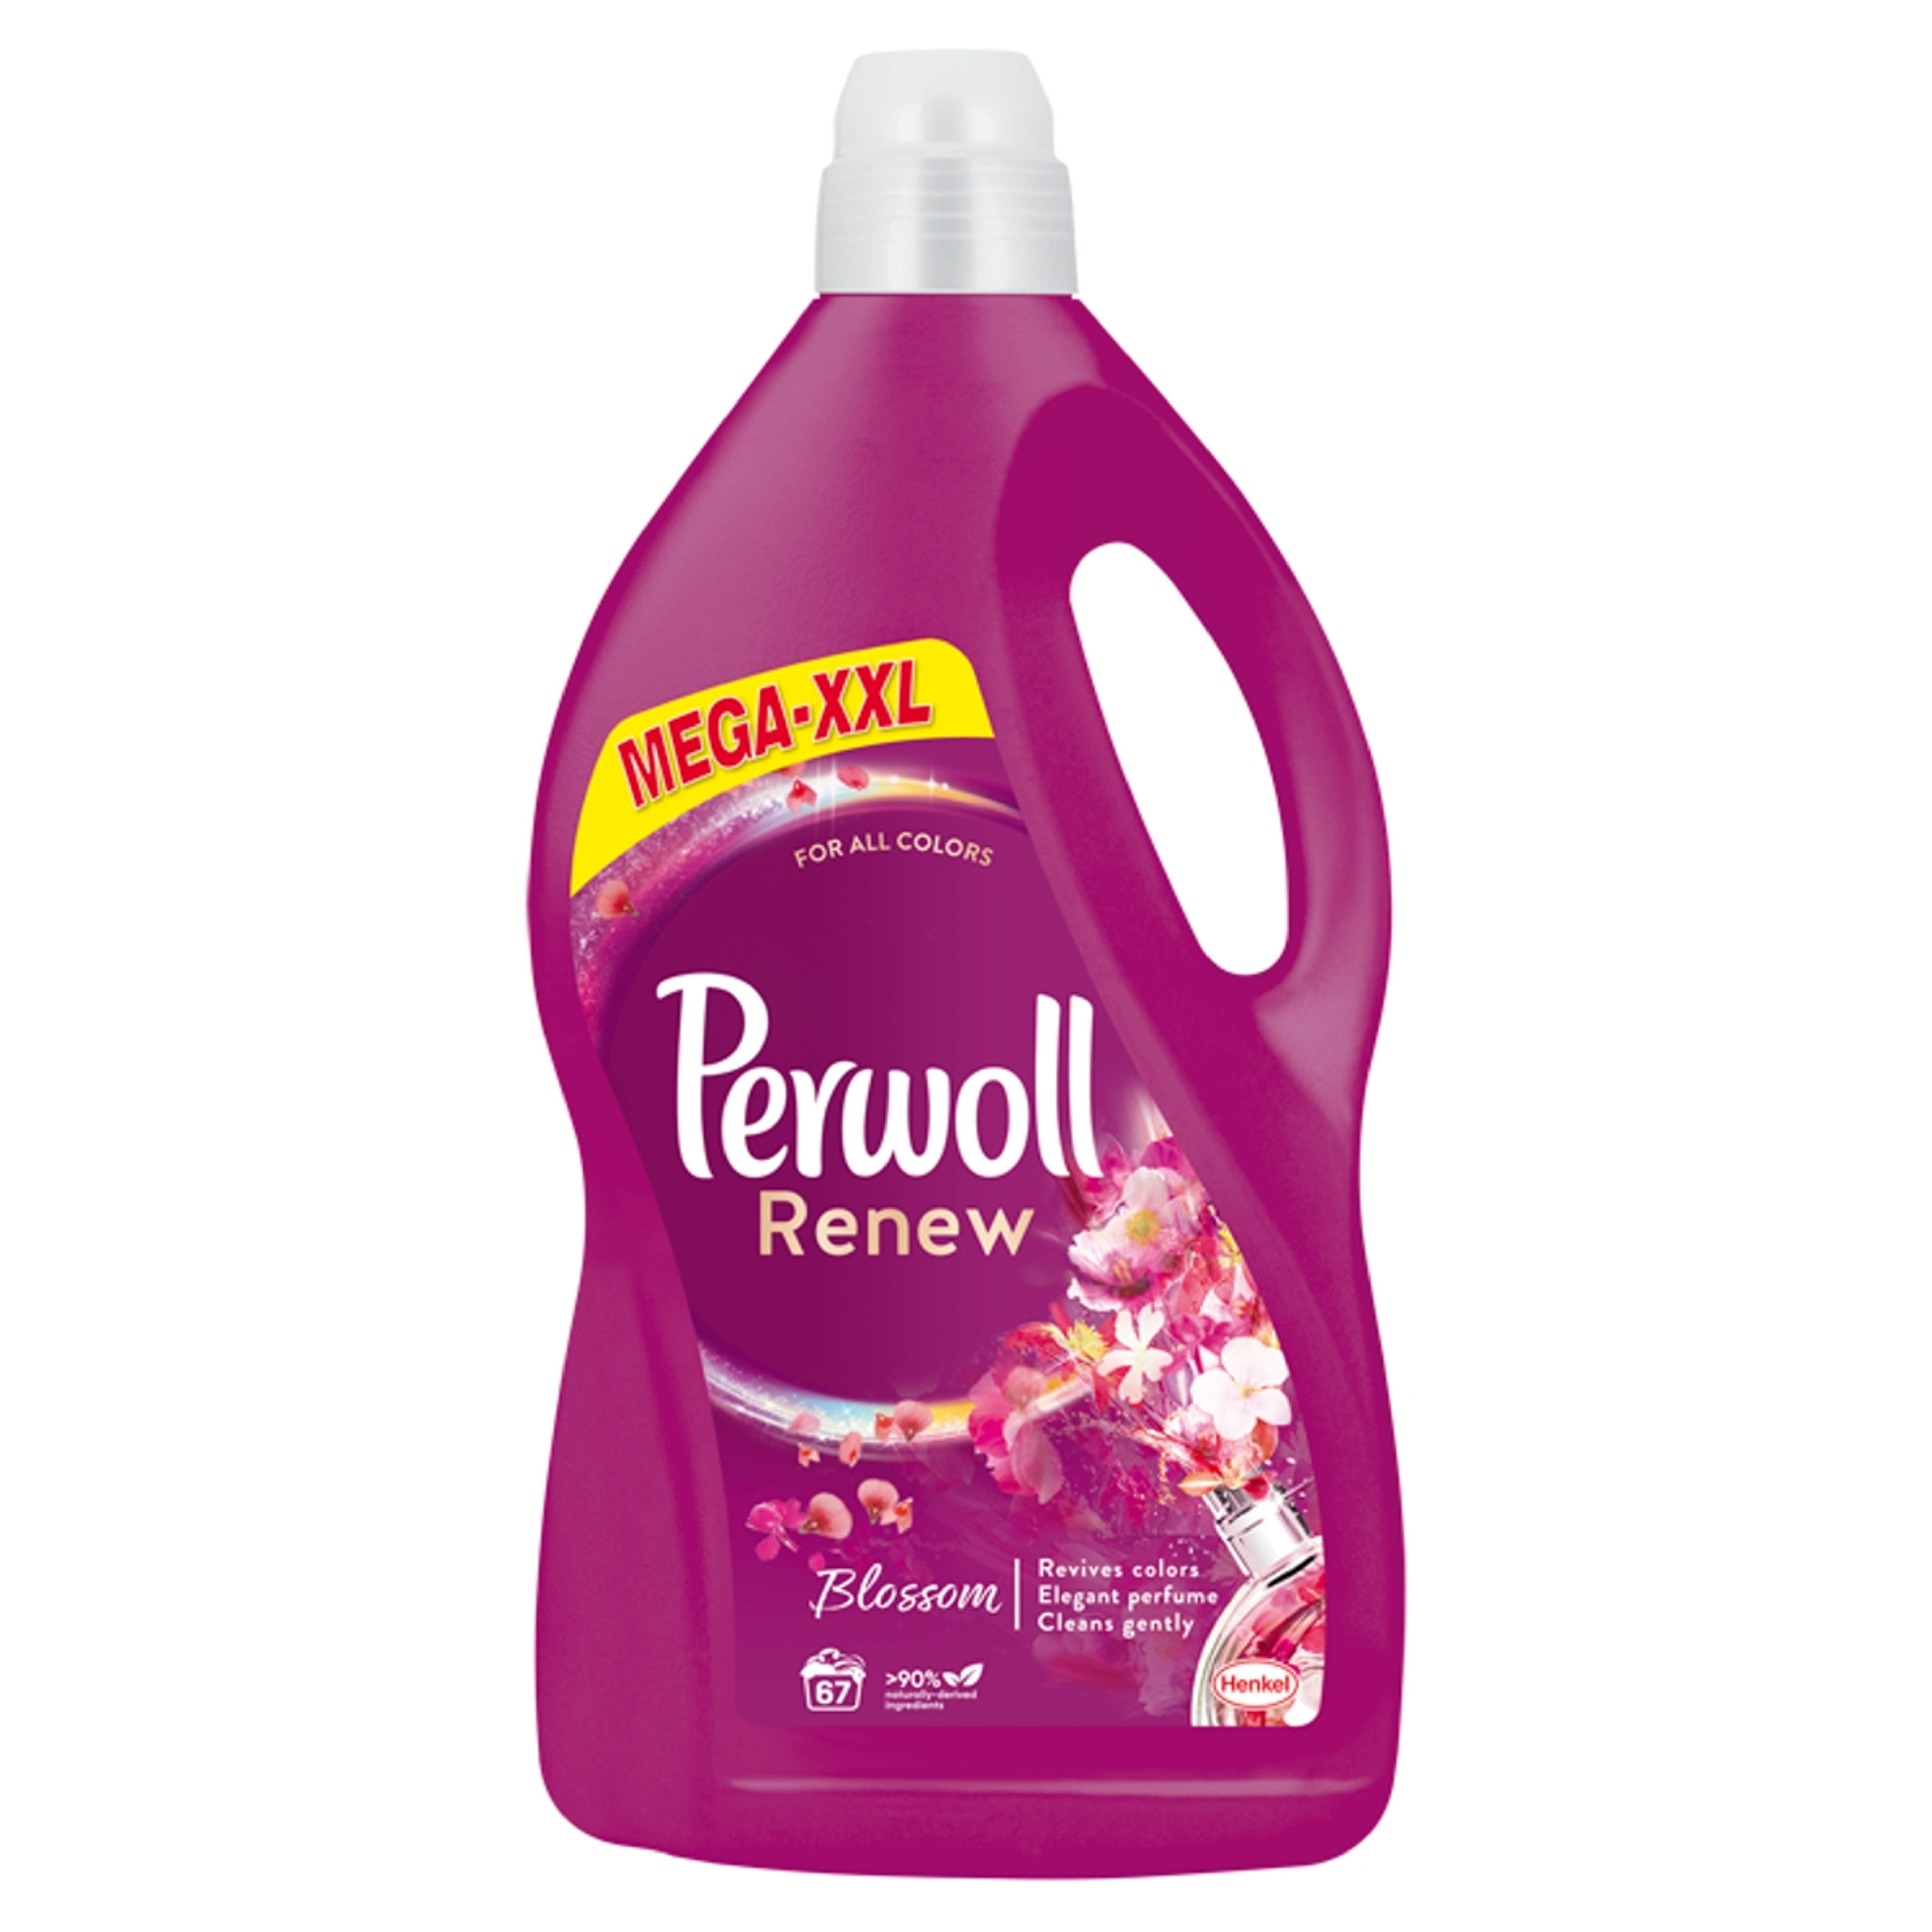 Perwoll Renew&Blossom folyékony mosószer, 67 mosás - 4050 ml